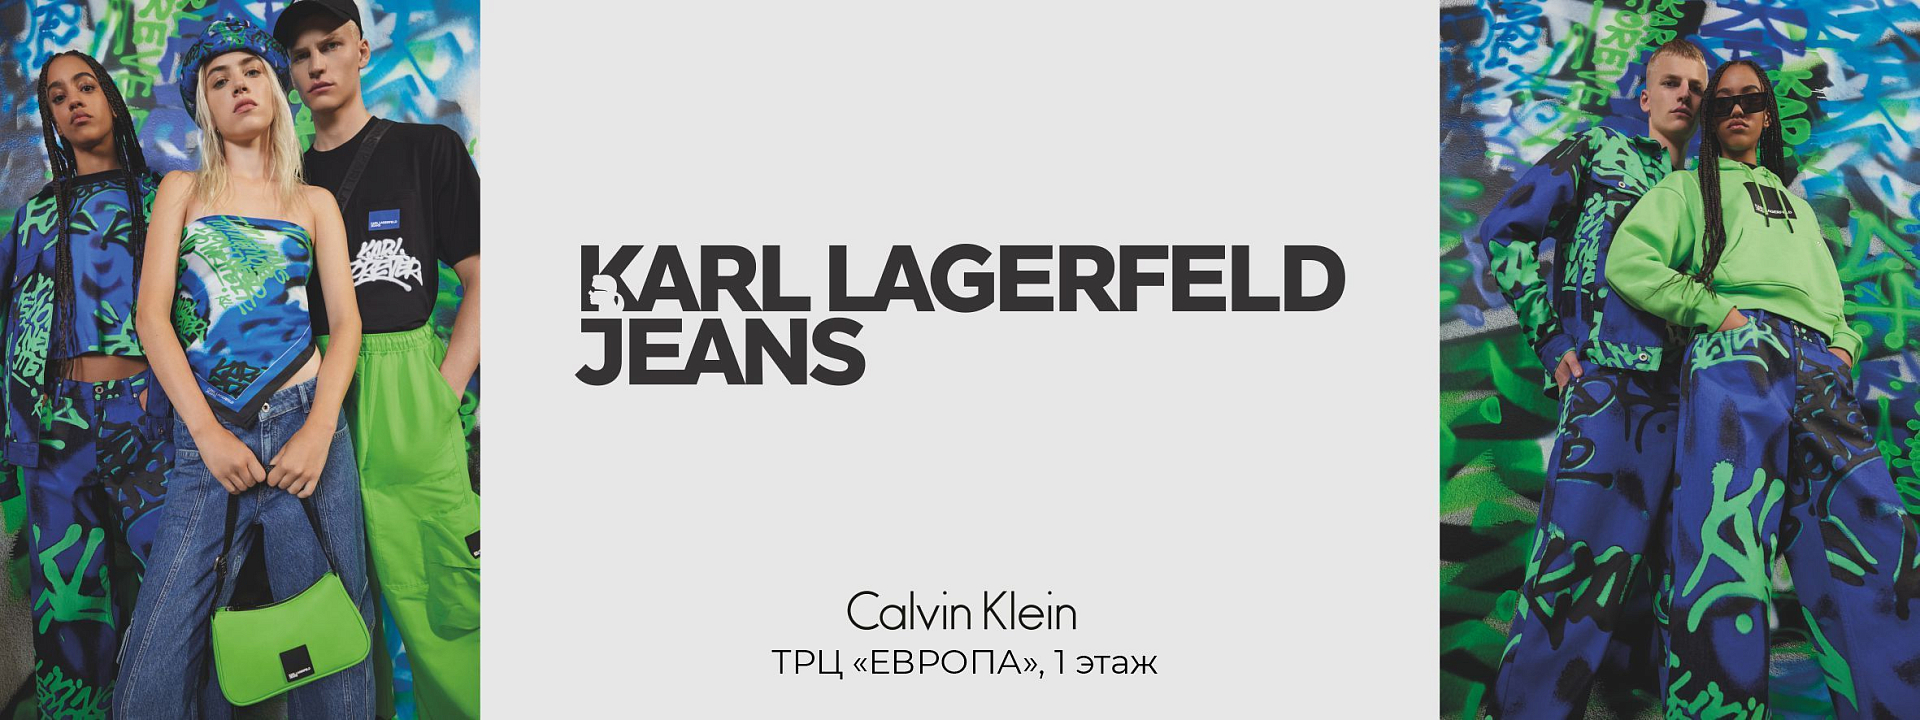 Новый бренд karl Lagerfeld Jeans